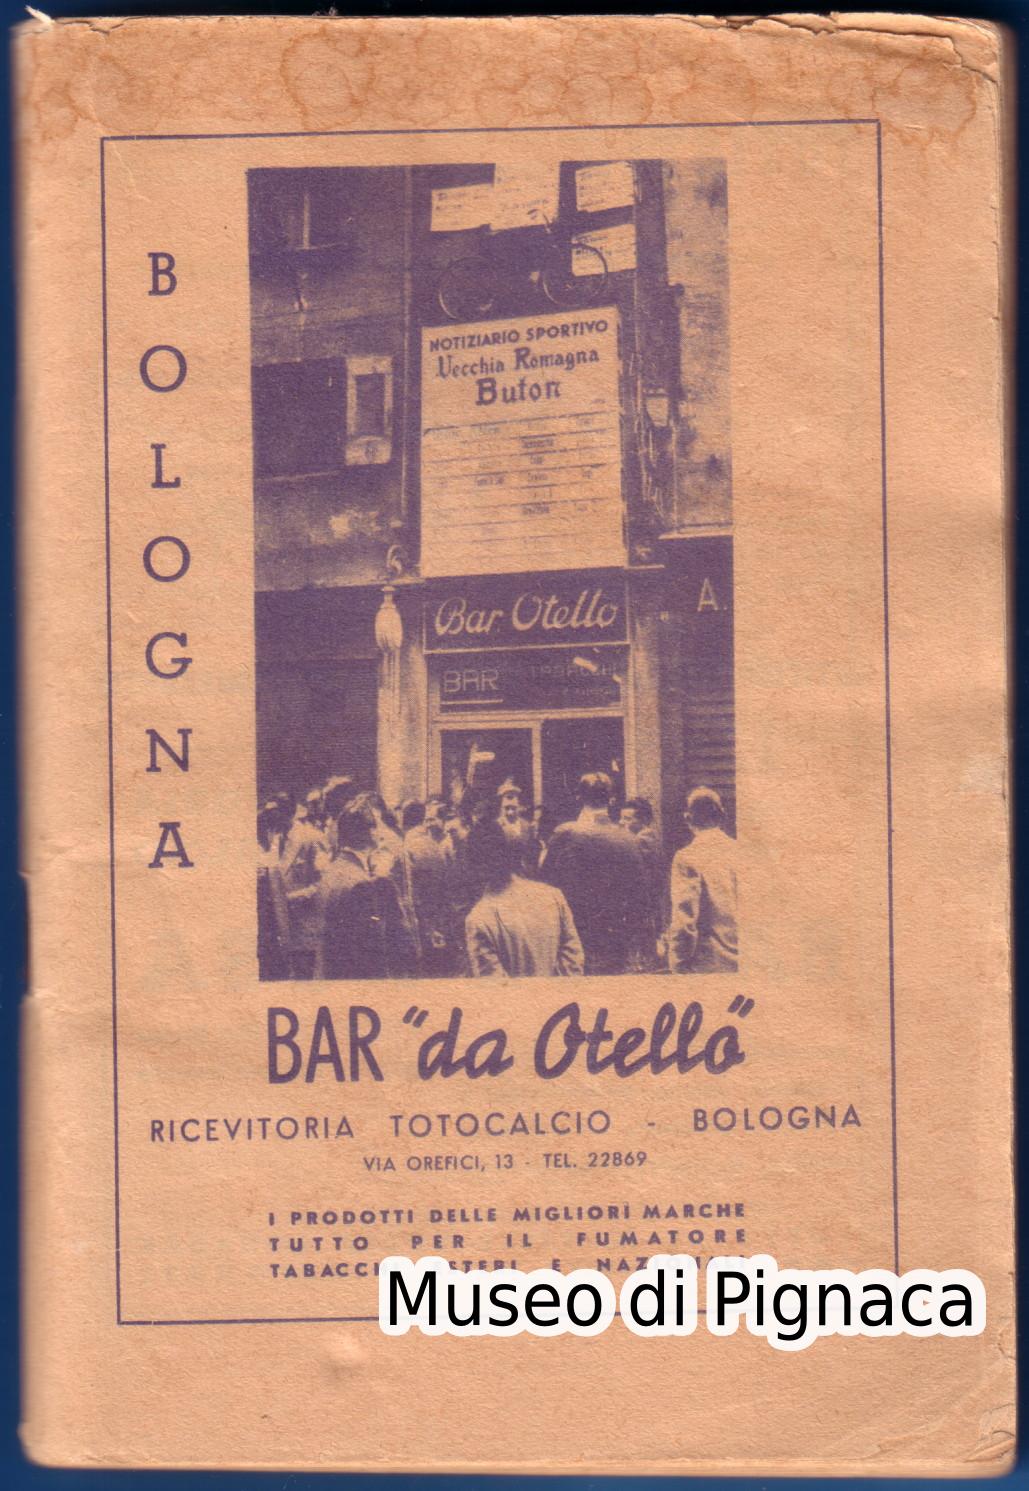 1949/50 almanacco - guida totocalcio BAR OTELLO Bologna